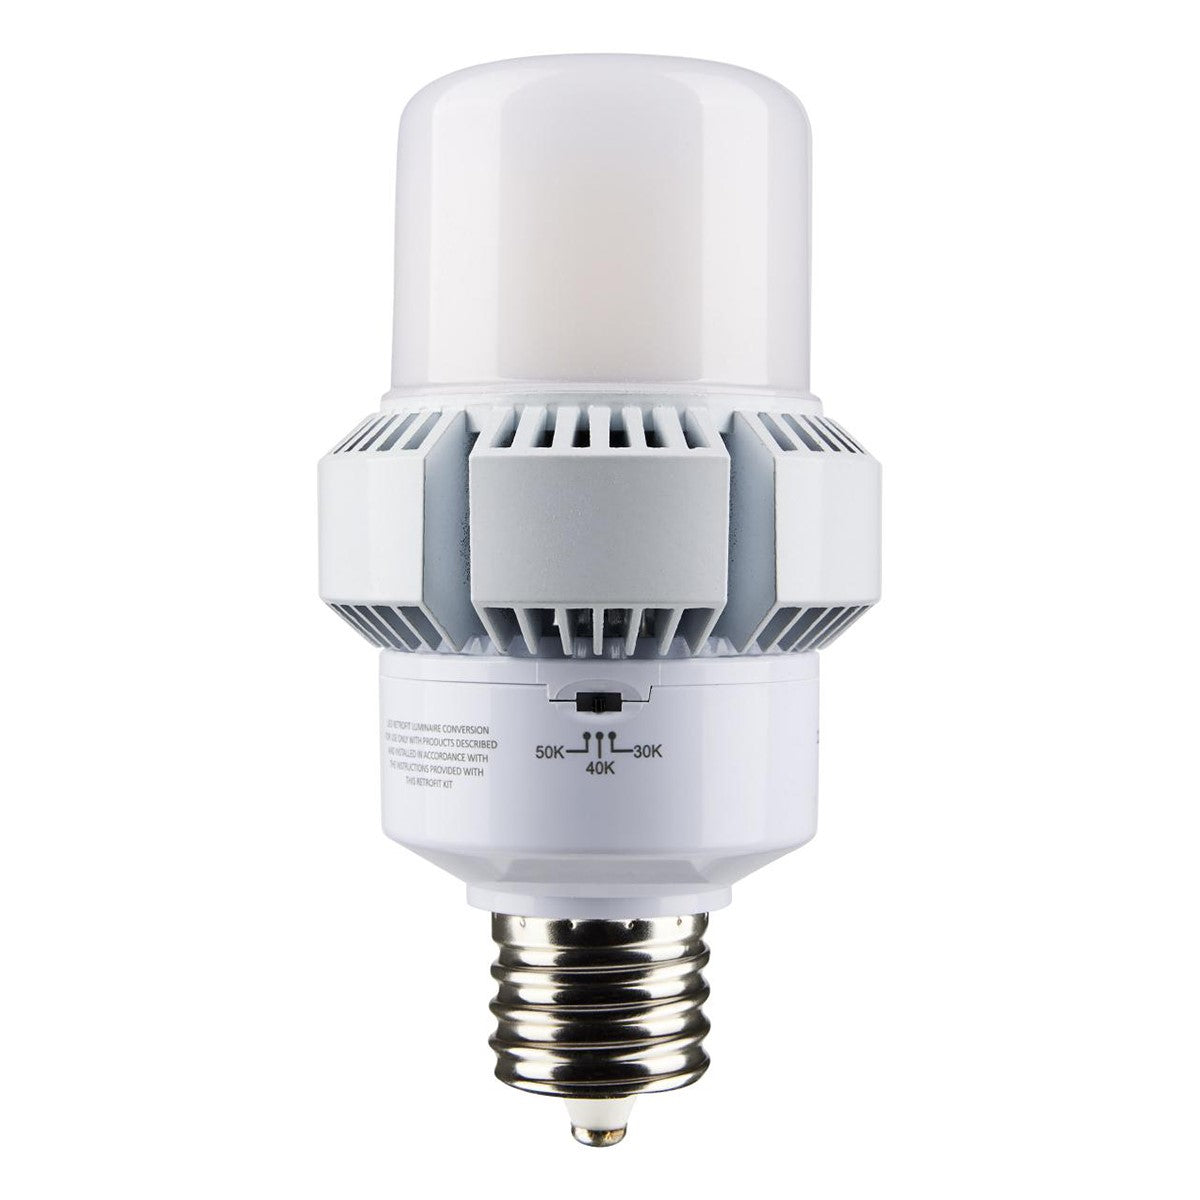 Retrofit LED Corn Bulb, 45W, 5850 Lumens, Selectable CCT, 30K/40K/50K, E39 Mogul Base, 120-277V